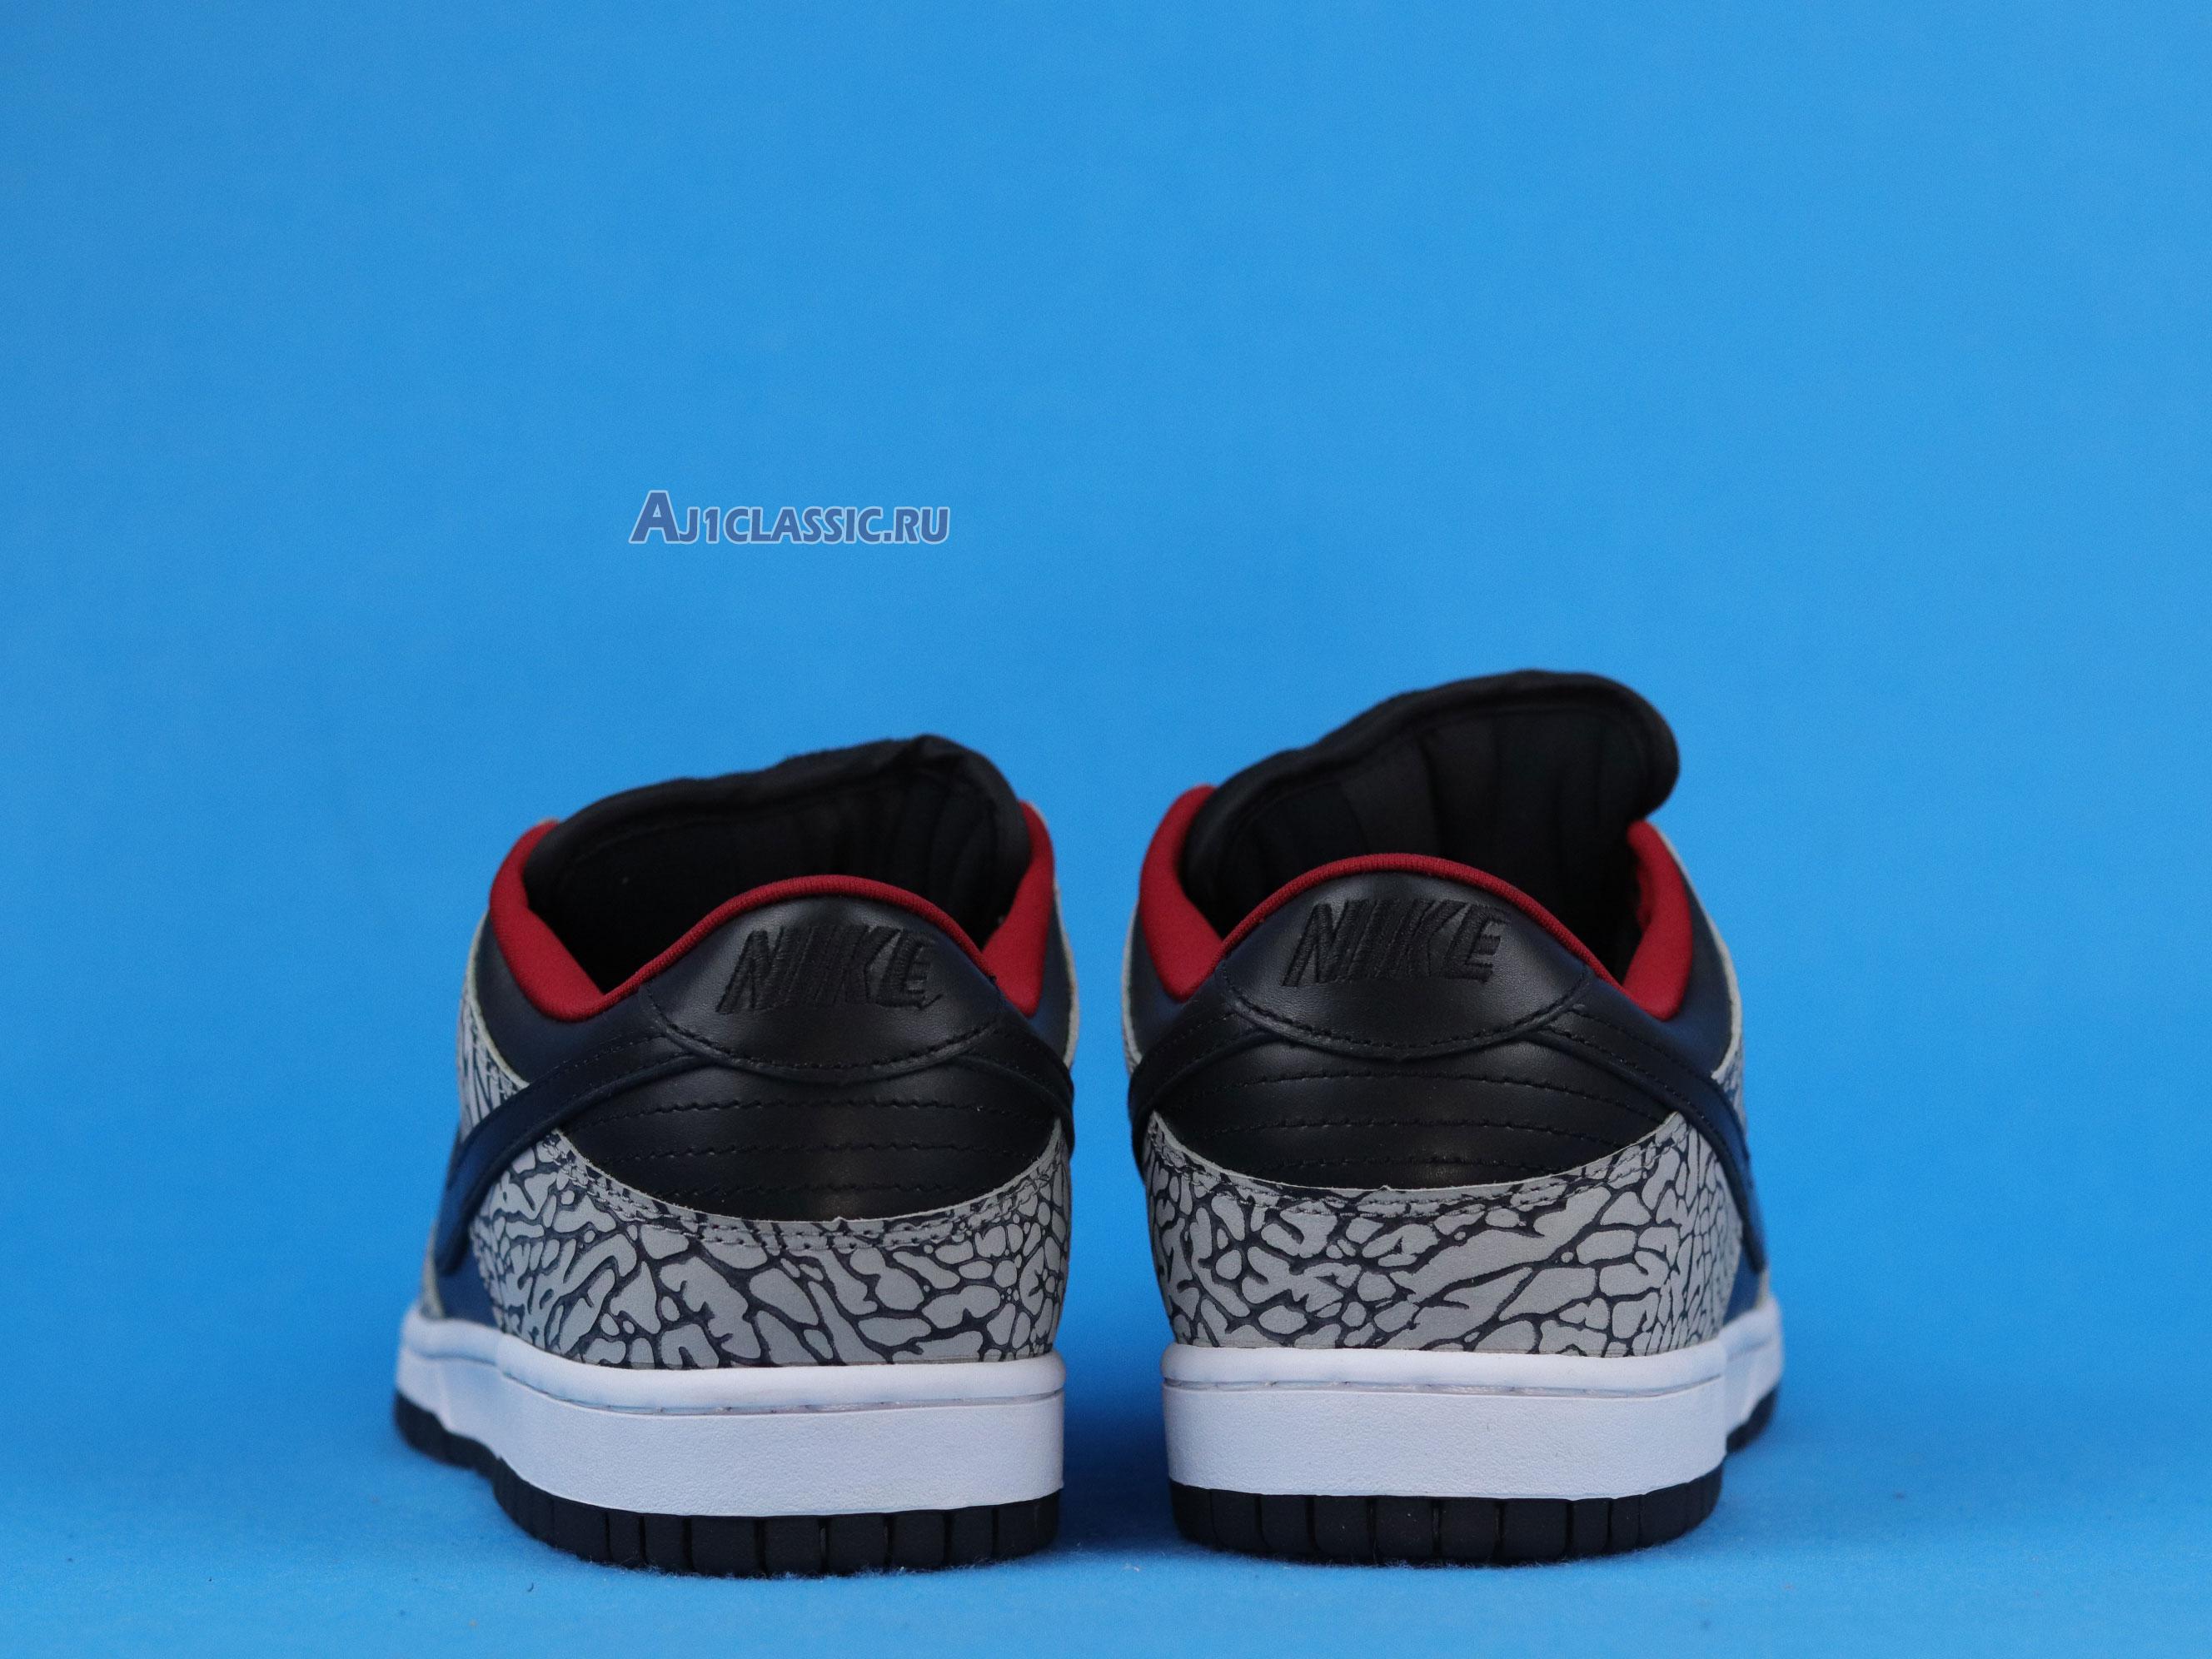 Supreme x Nike Dunk Low Pro SB "Black Cement" 304292-131